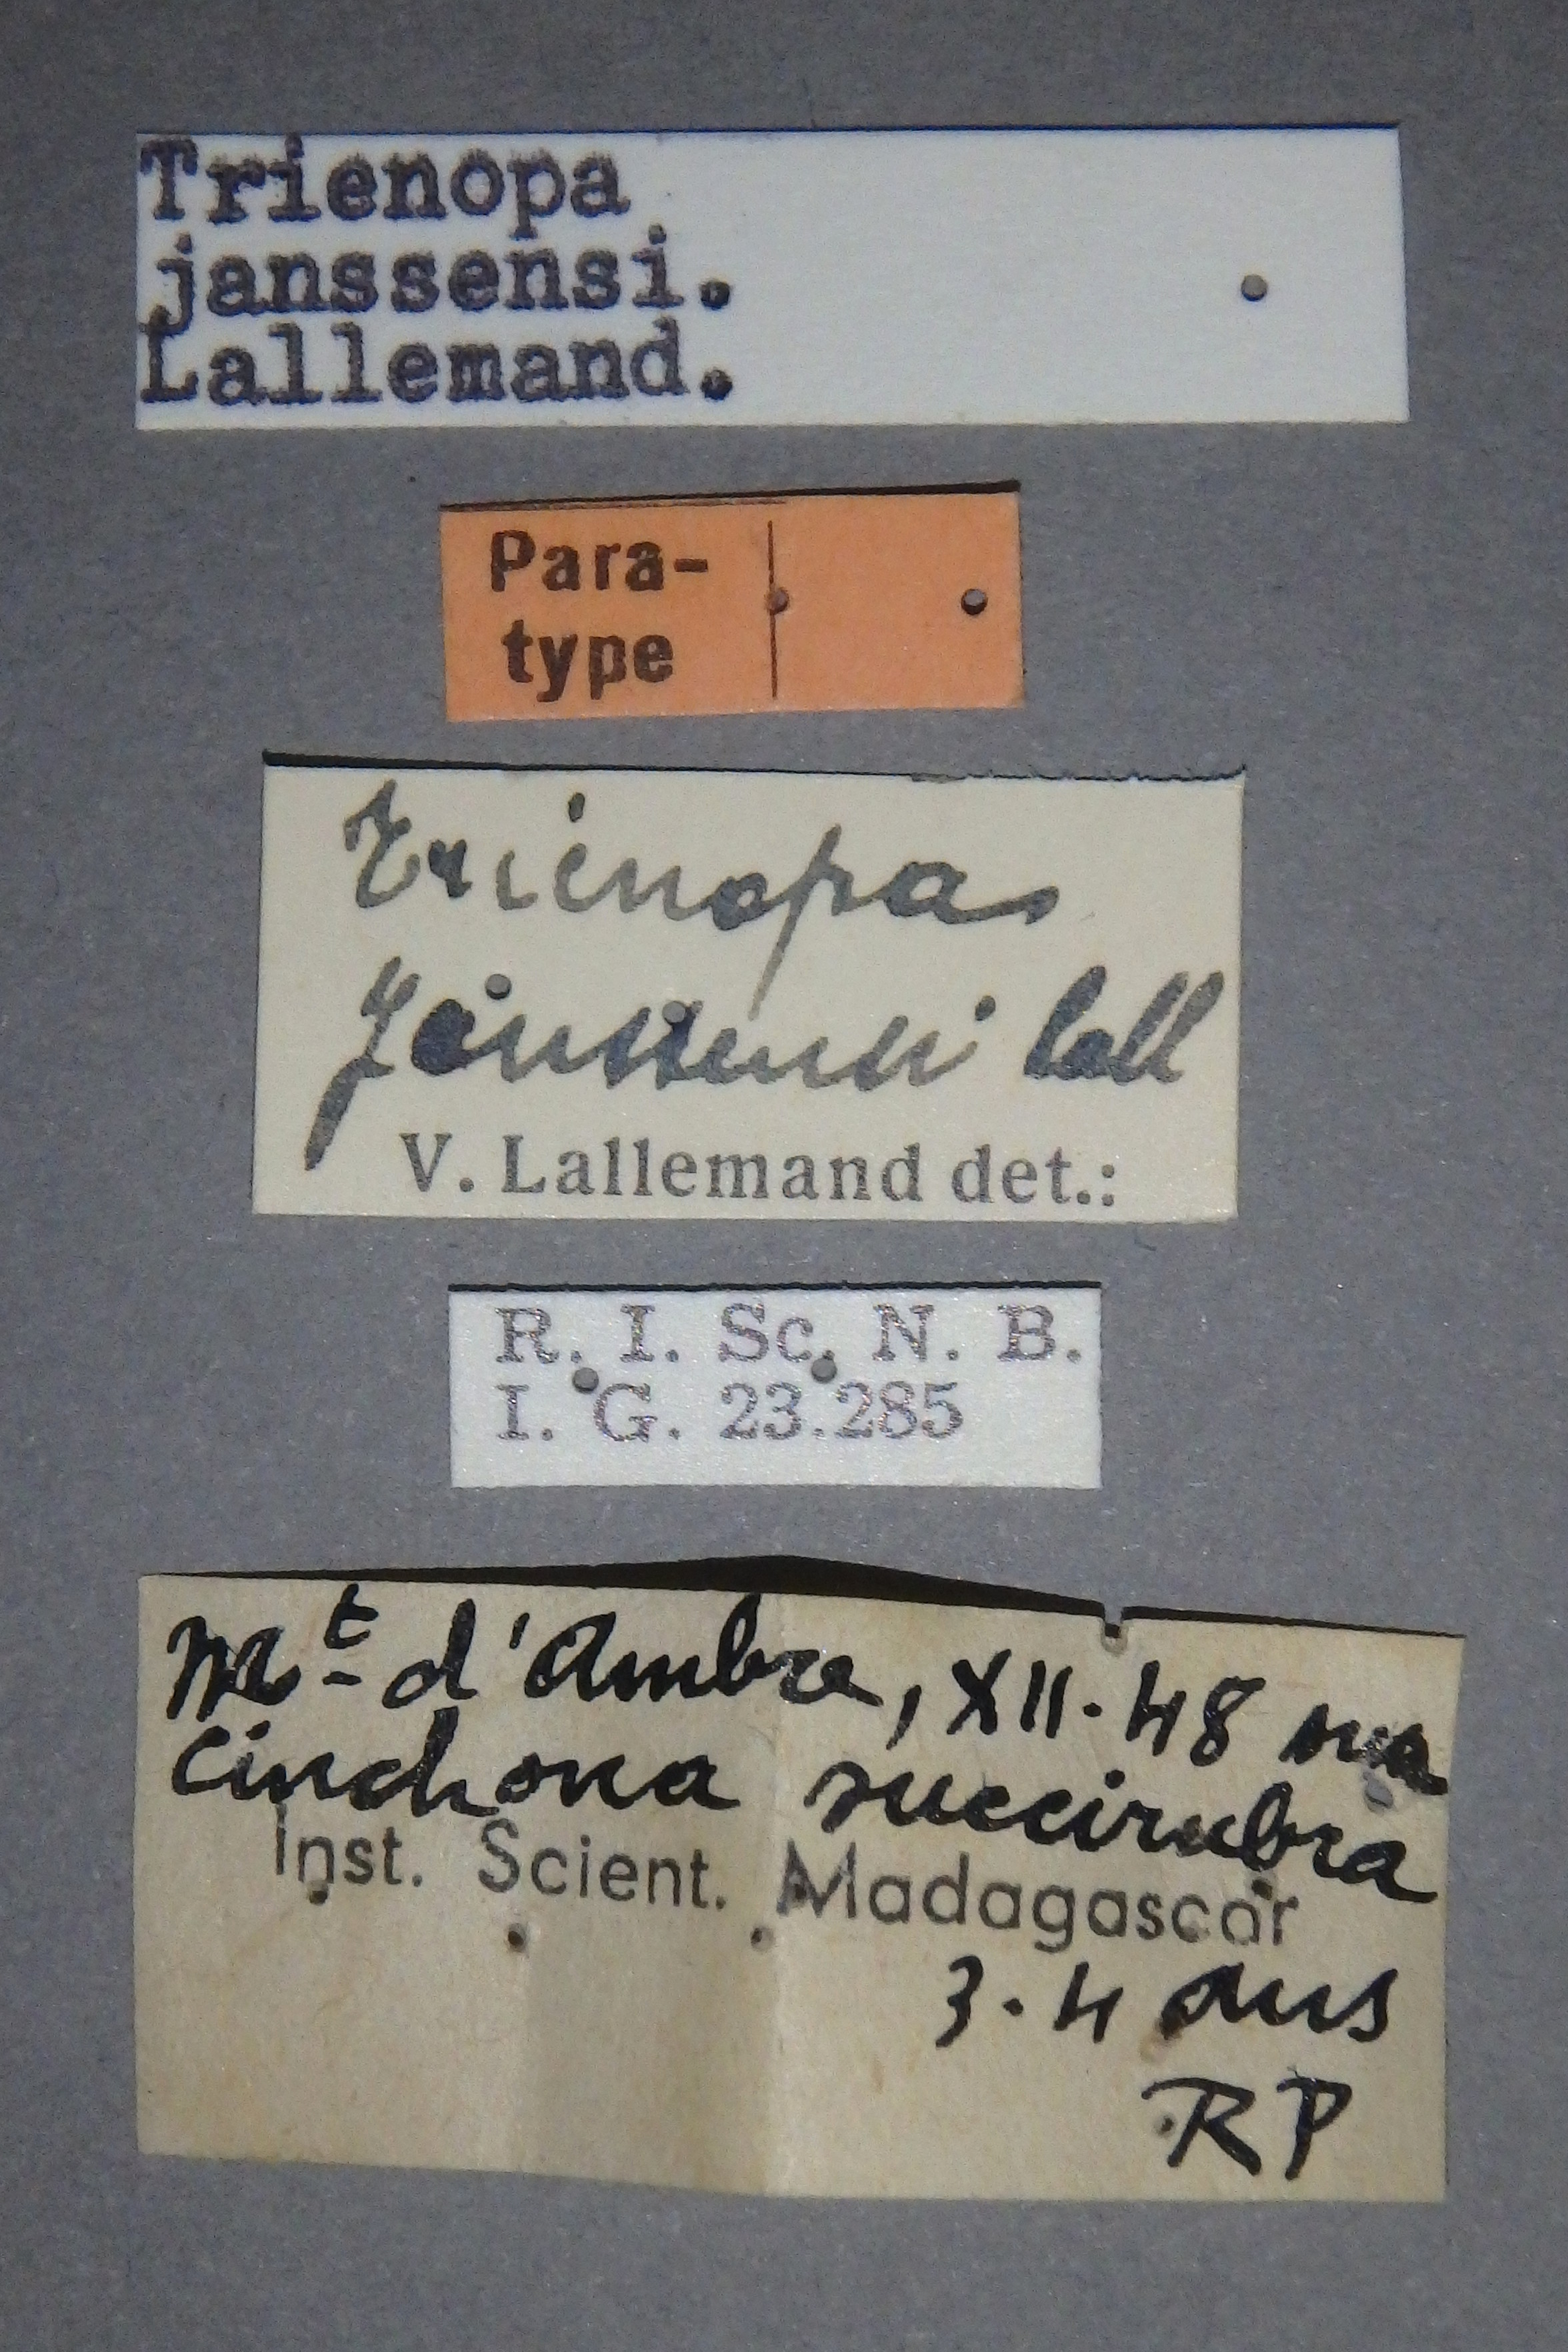 Trienopa janssensi pt Lb.jpg